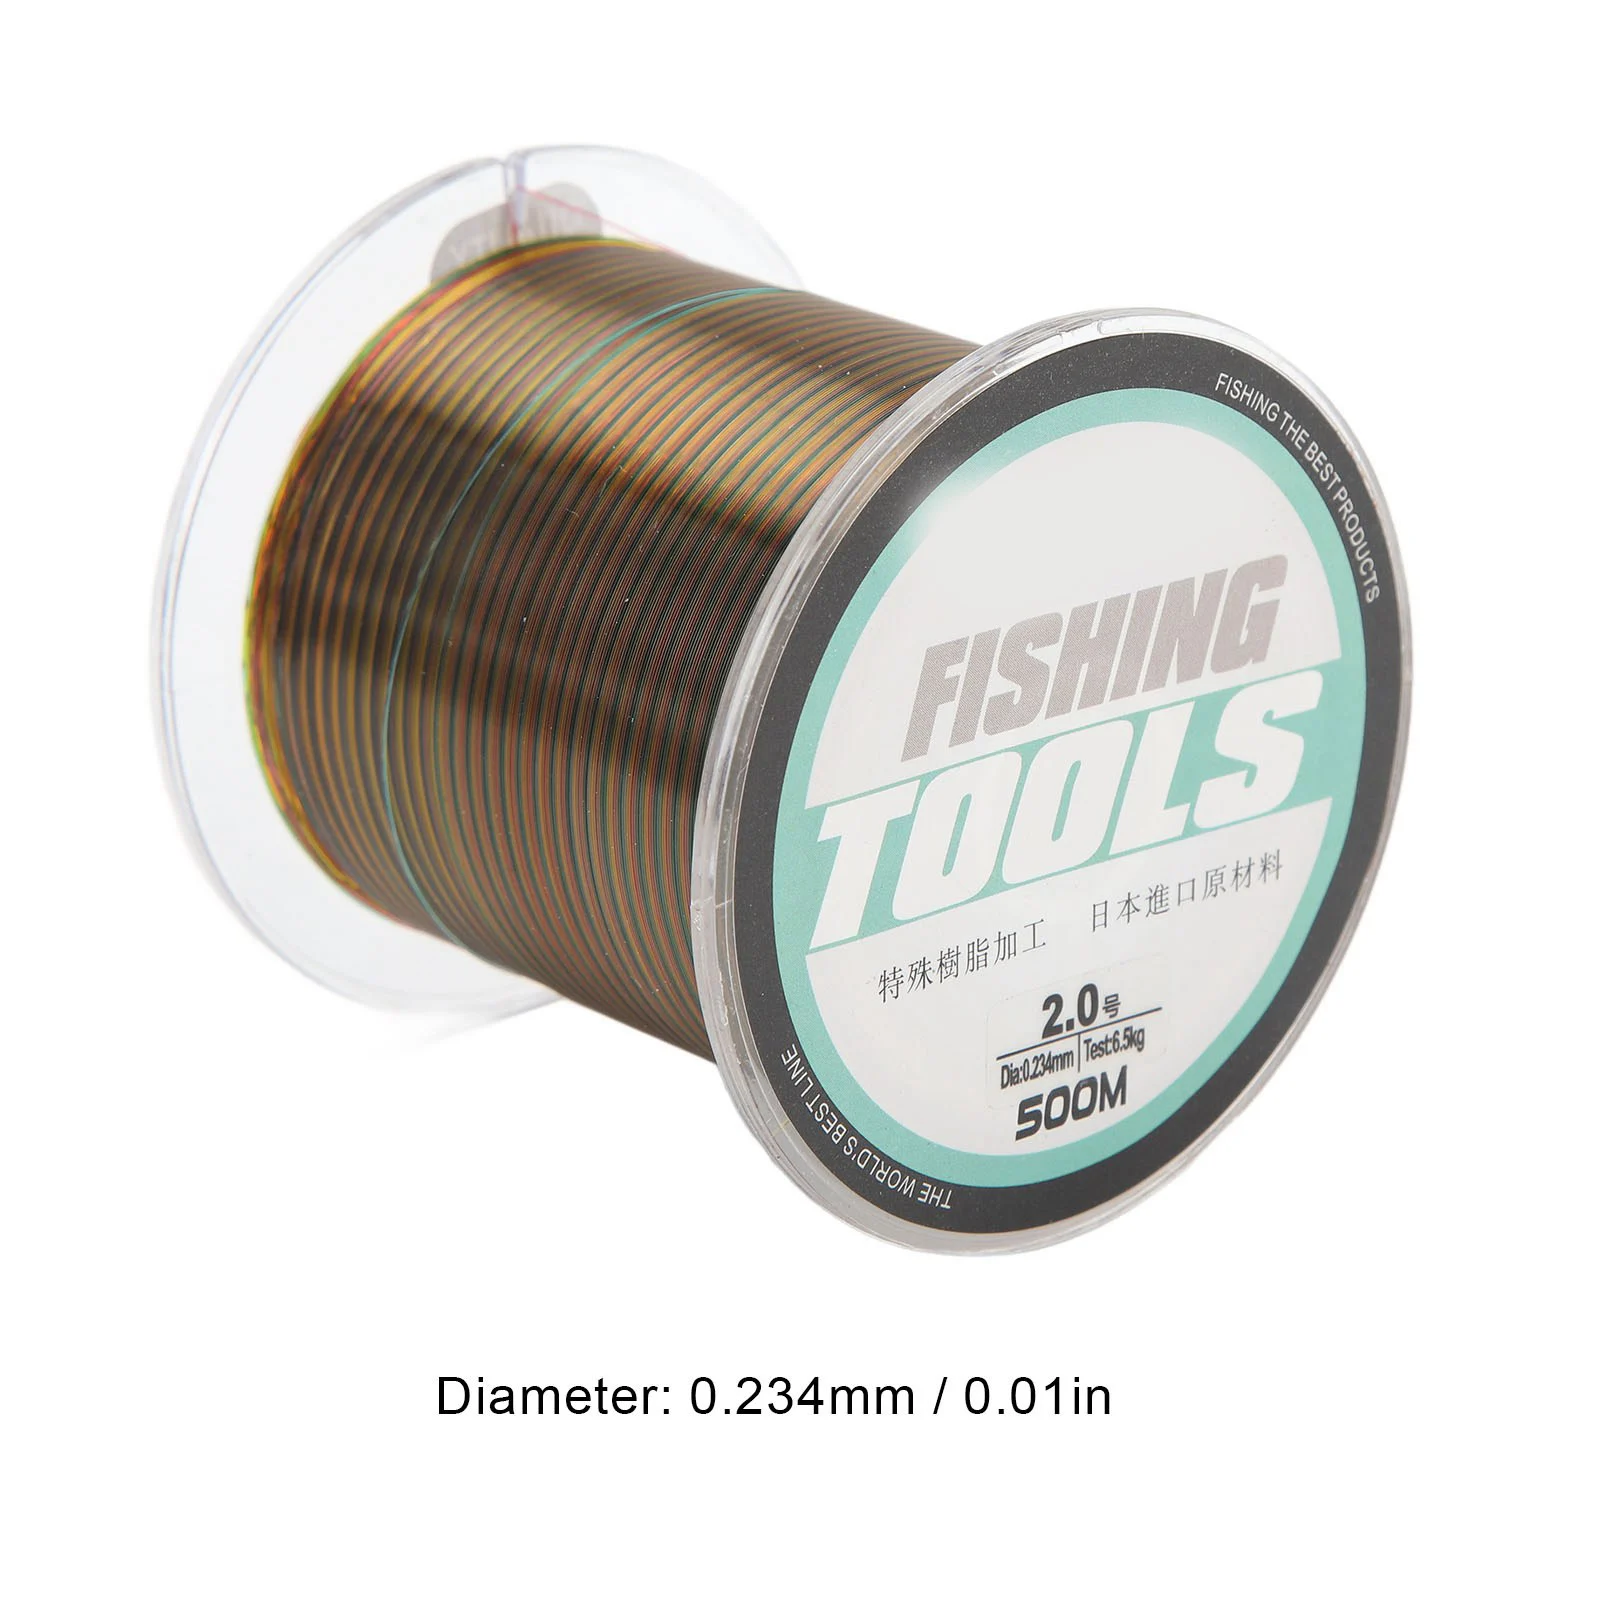 https://ae01.alicdn.com/kf/Se42a427dbe684c18ad44df95690327bey/Fishing-Line-500m-0-234mm-Diameter-14lb-Tension-Anti-Wrap-Colorful-Fishing-String-for-Freshwater-Fishing.jpg